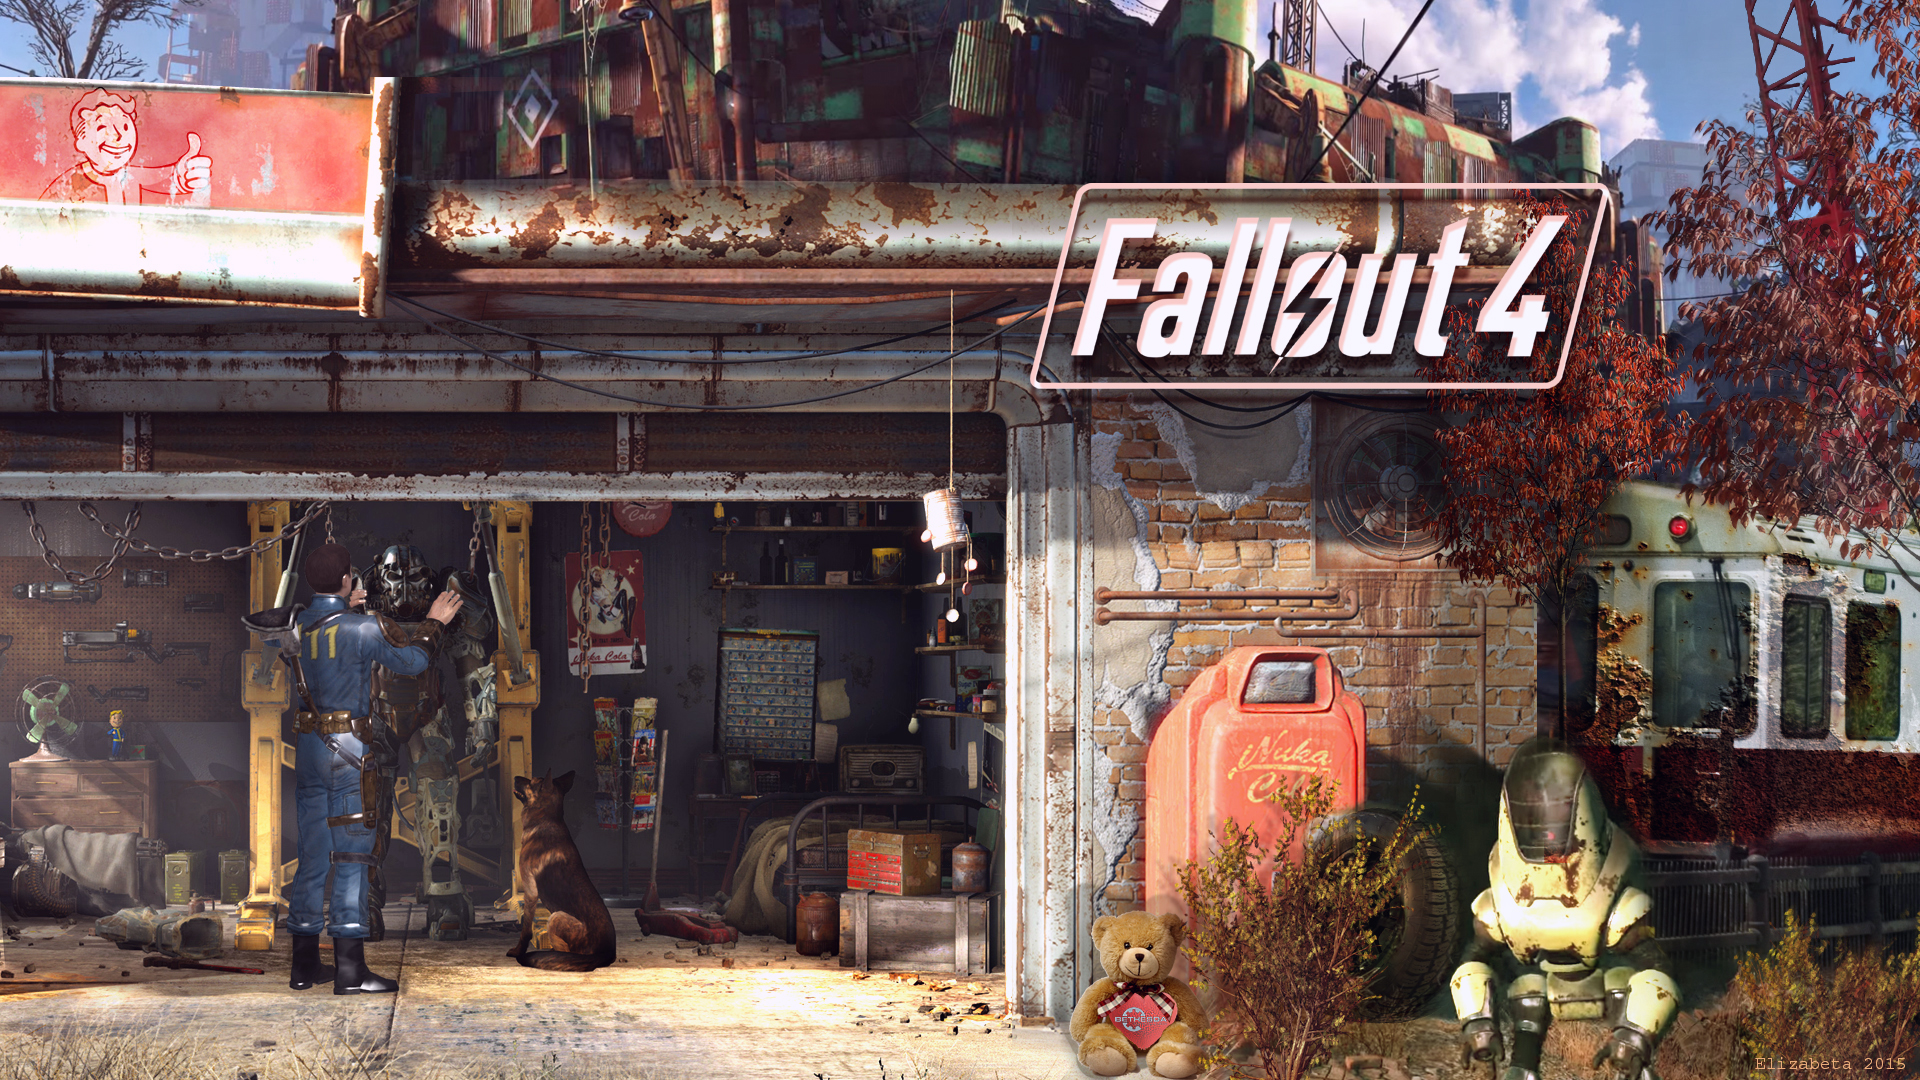 Fallout4 壁紙 ボーイ Fallout4 壁紙 あなたのための最高の壁紙画像